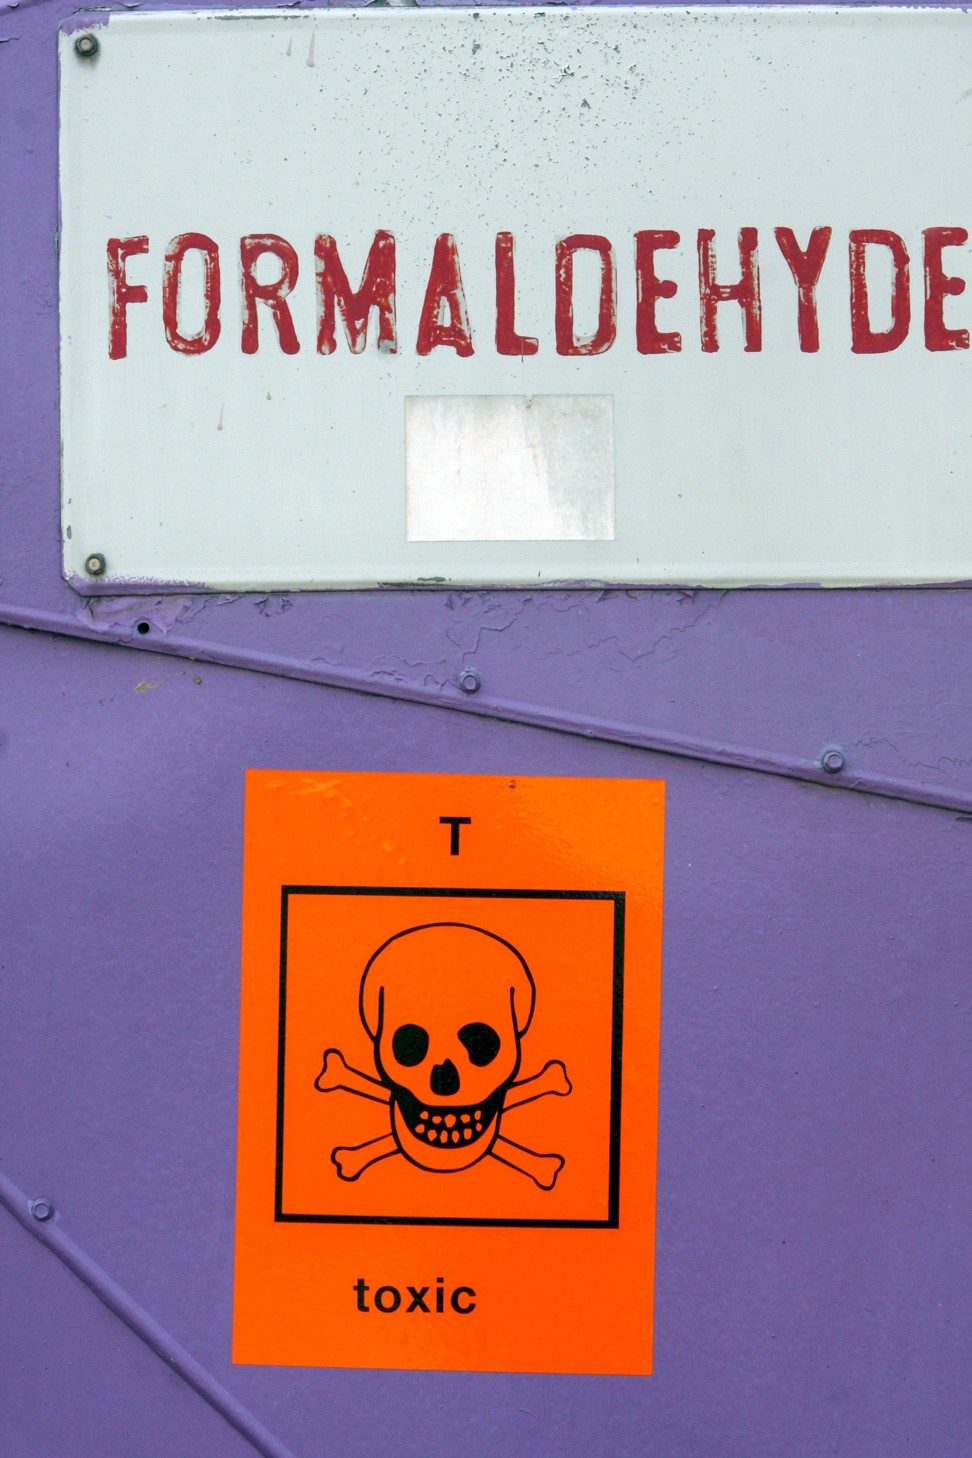 Formaldehyde is a confirmed human carcinogen.